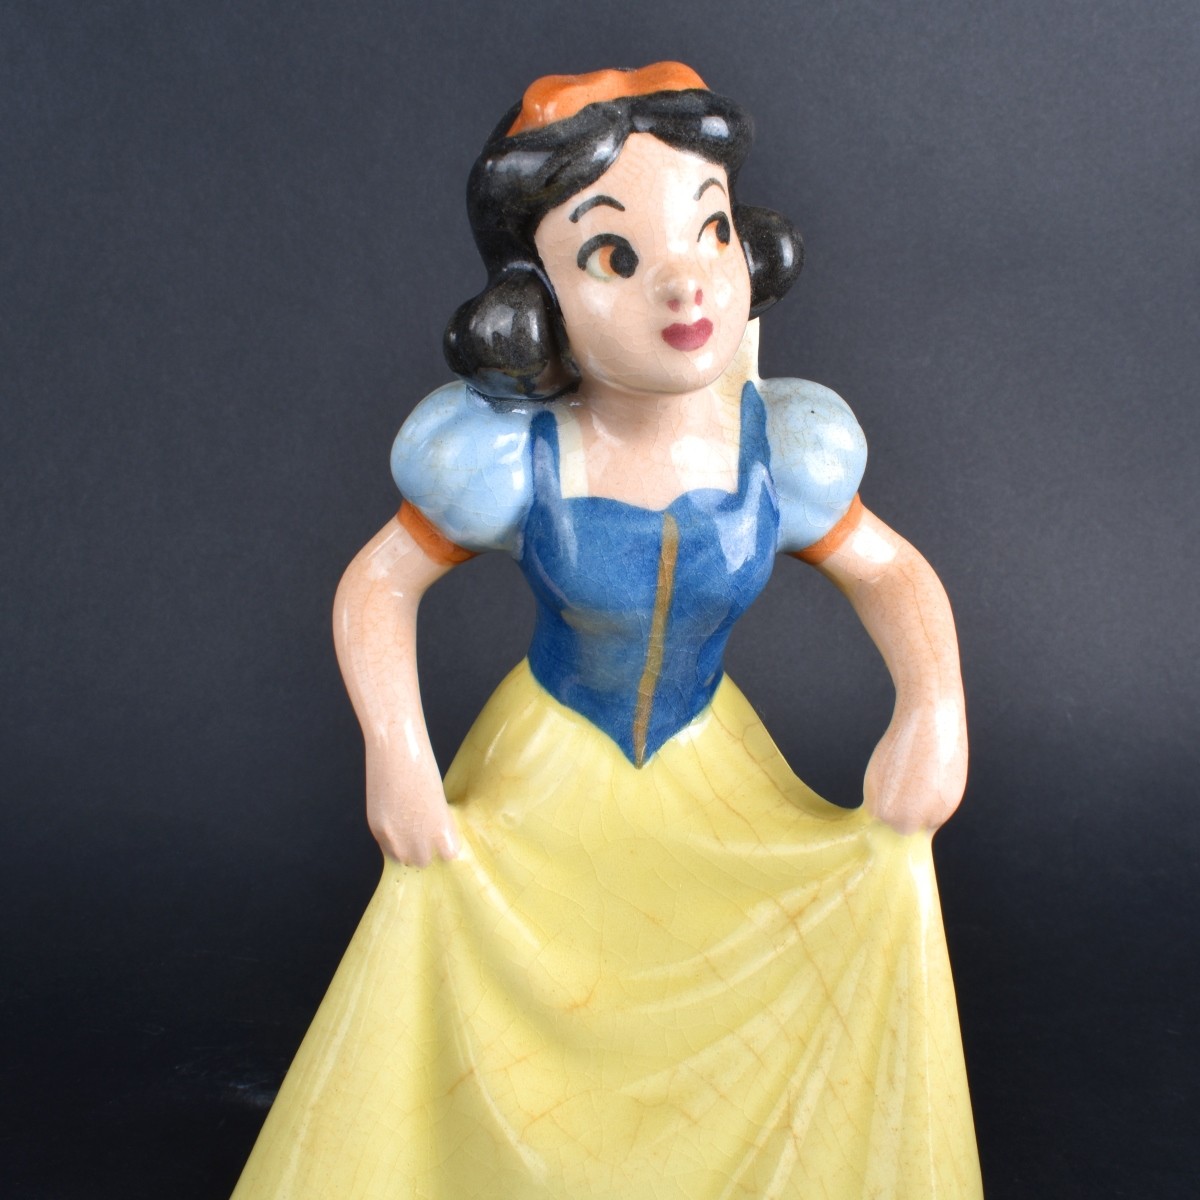 Snow White Figures